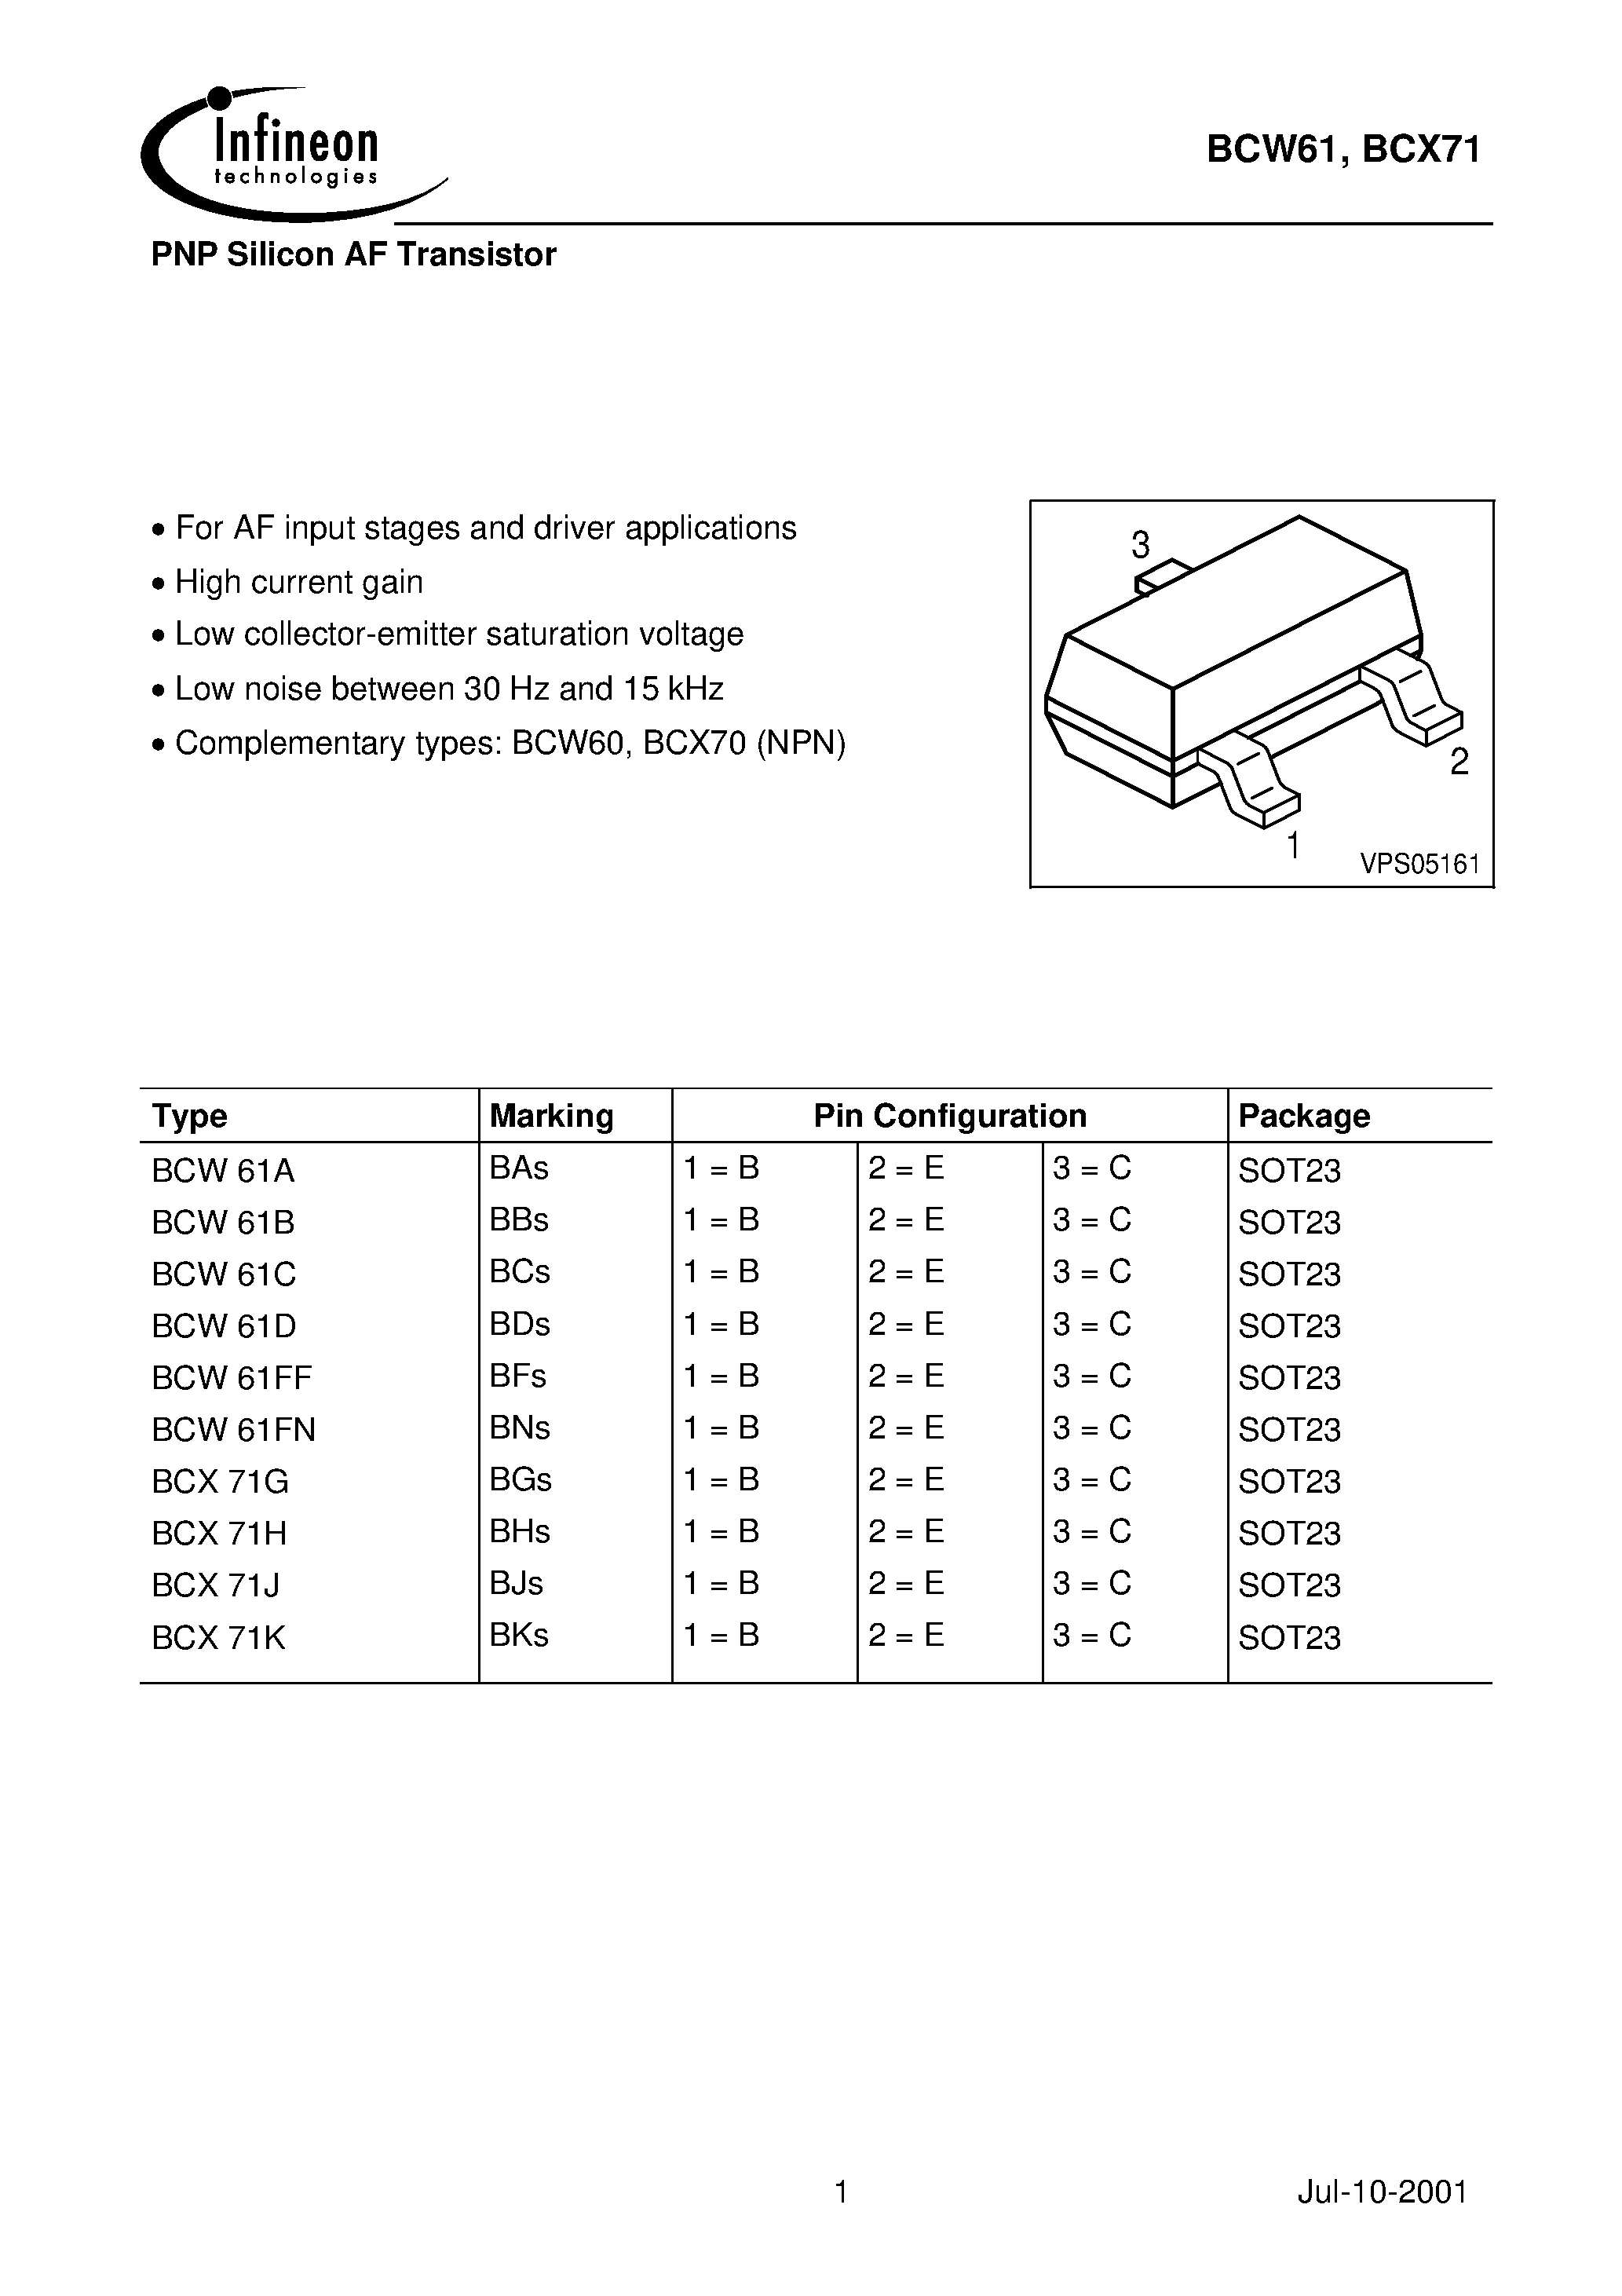 Даташит BCX71J - PNP Silicon AF Transistor страница 1